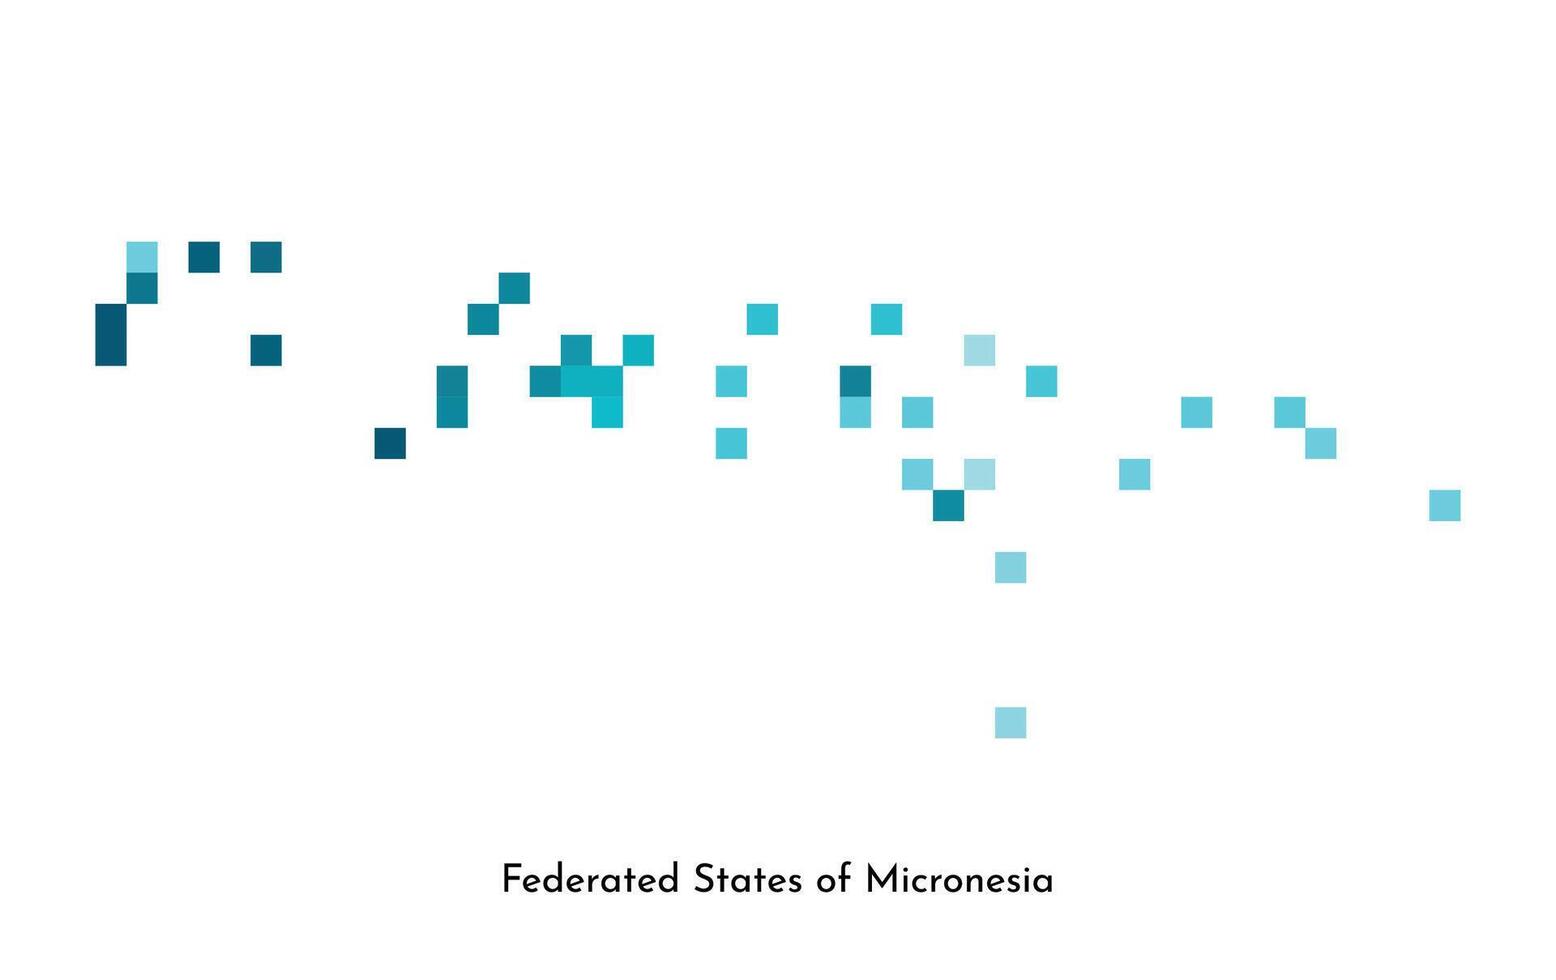 vetor isolado geométrico ilustração com simplificado gelado azul silhueta do federado estados do Micronésia mapa. pixel arte estilo para nft modelo. pontilhado logotipo com gradiente textura